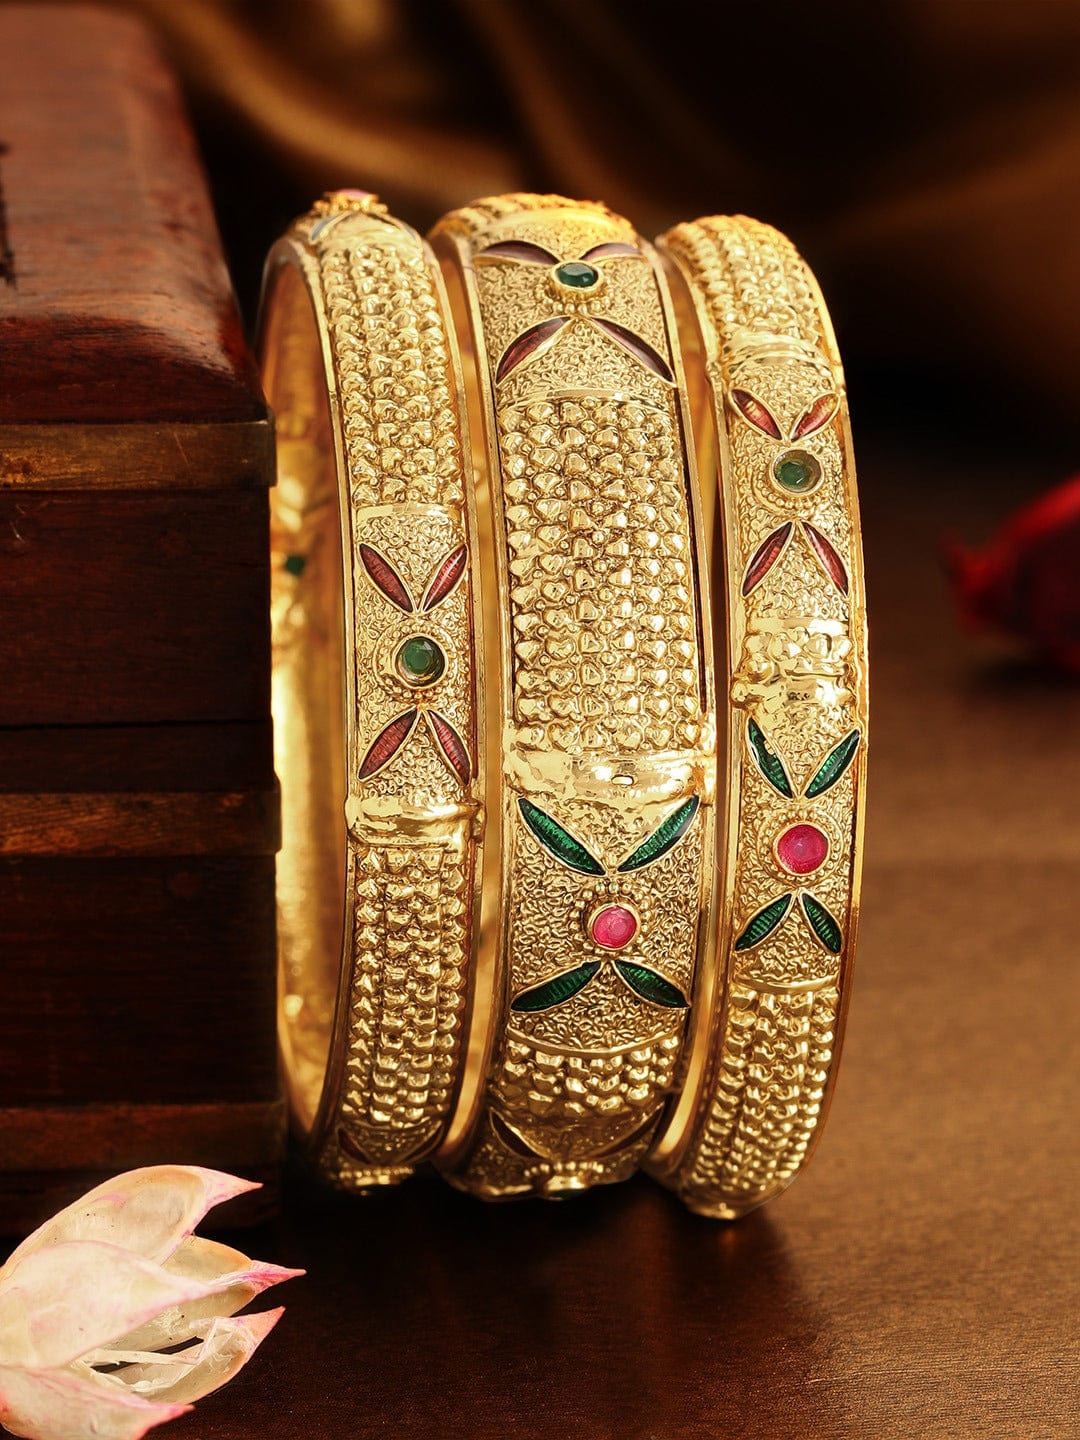 Rubans Set of 3 22K Gold Plated Handcrafted Bangles Bangles & Bracelets